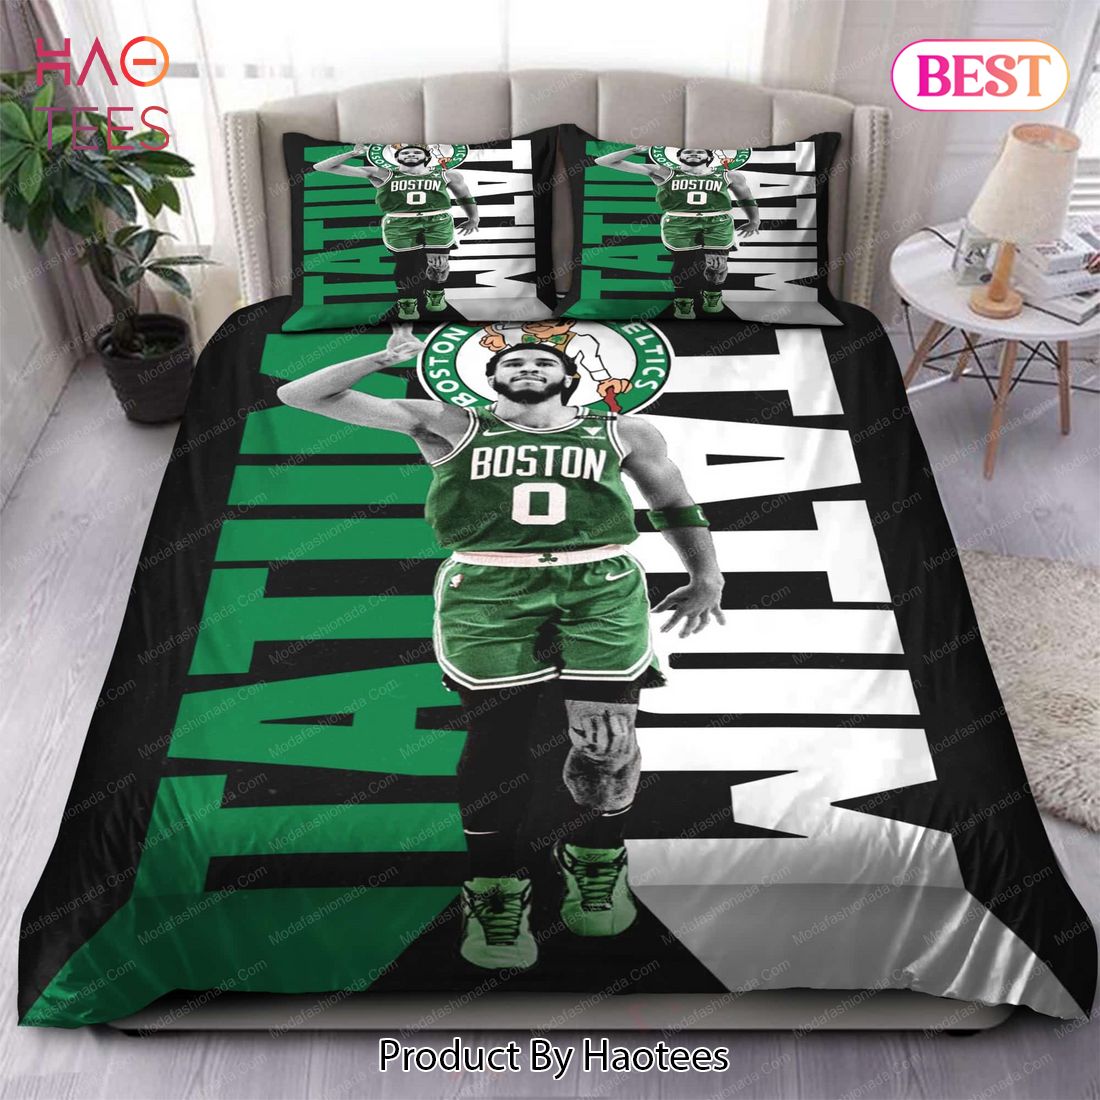 Buy Jayson Tatum Boston Celtics NBA 132 Bedding Sets Bed Sets, Bedroom Sets, Comforter Sets, Duvet Cover, Bedspread